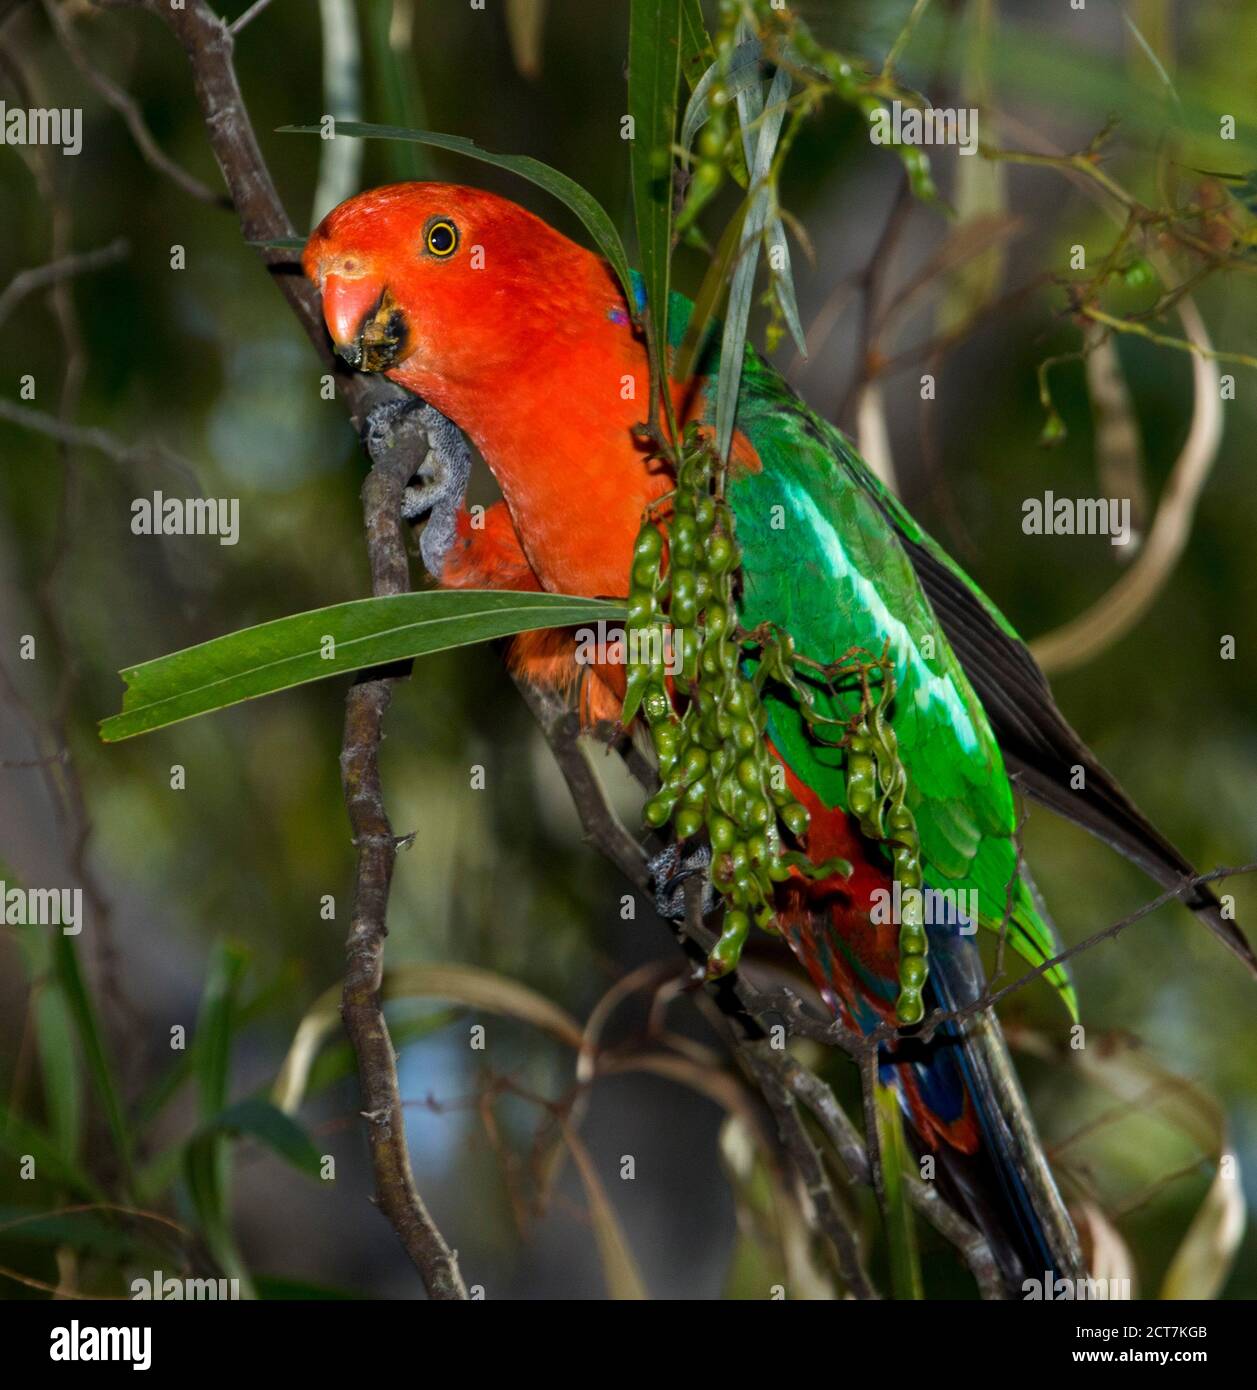 Perroquet de roi mâle rouge vif et vert, Aosterus scapularis se nourrissant des graines vertes d'un arbre larvaire dans un jardin australien Banque D'Images